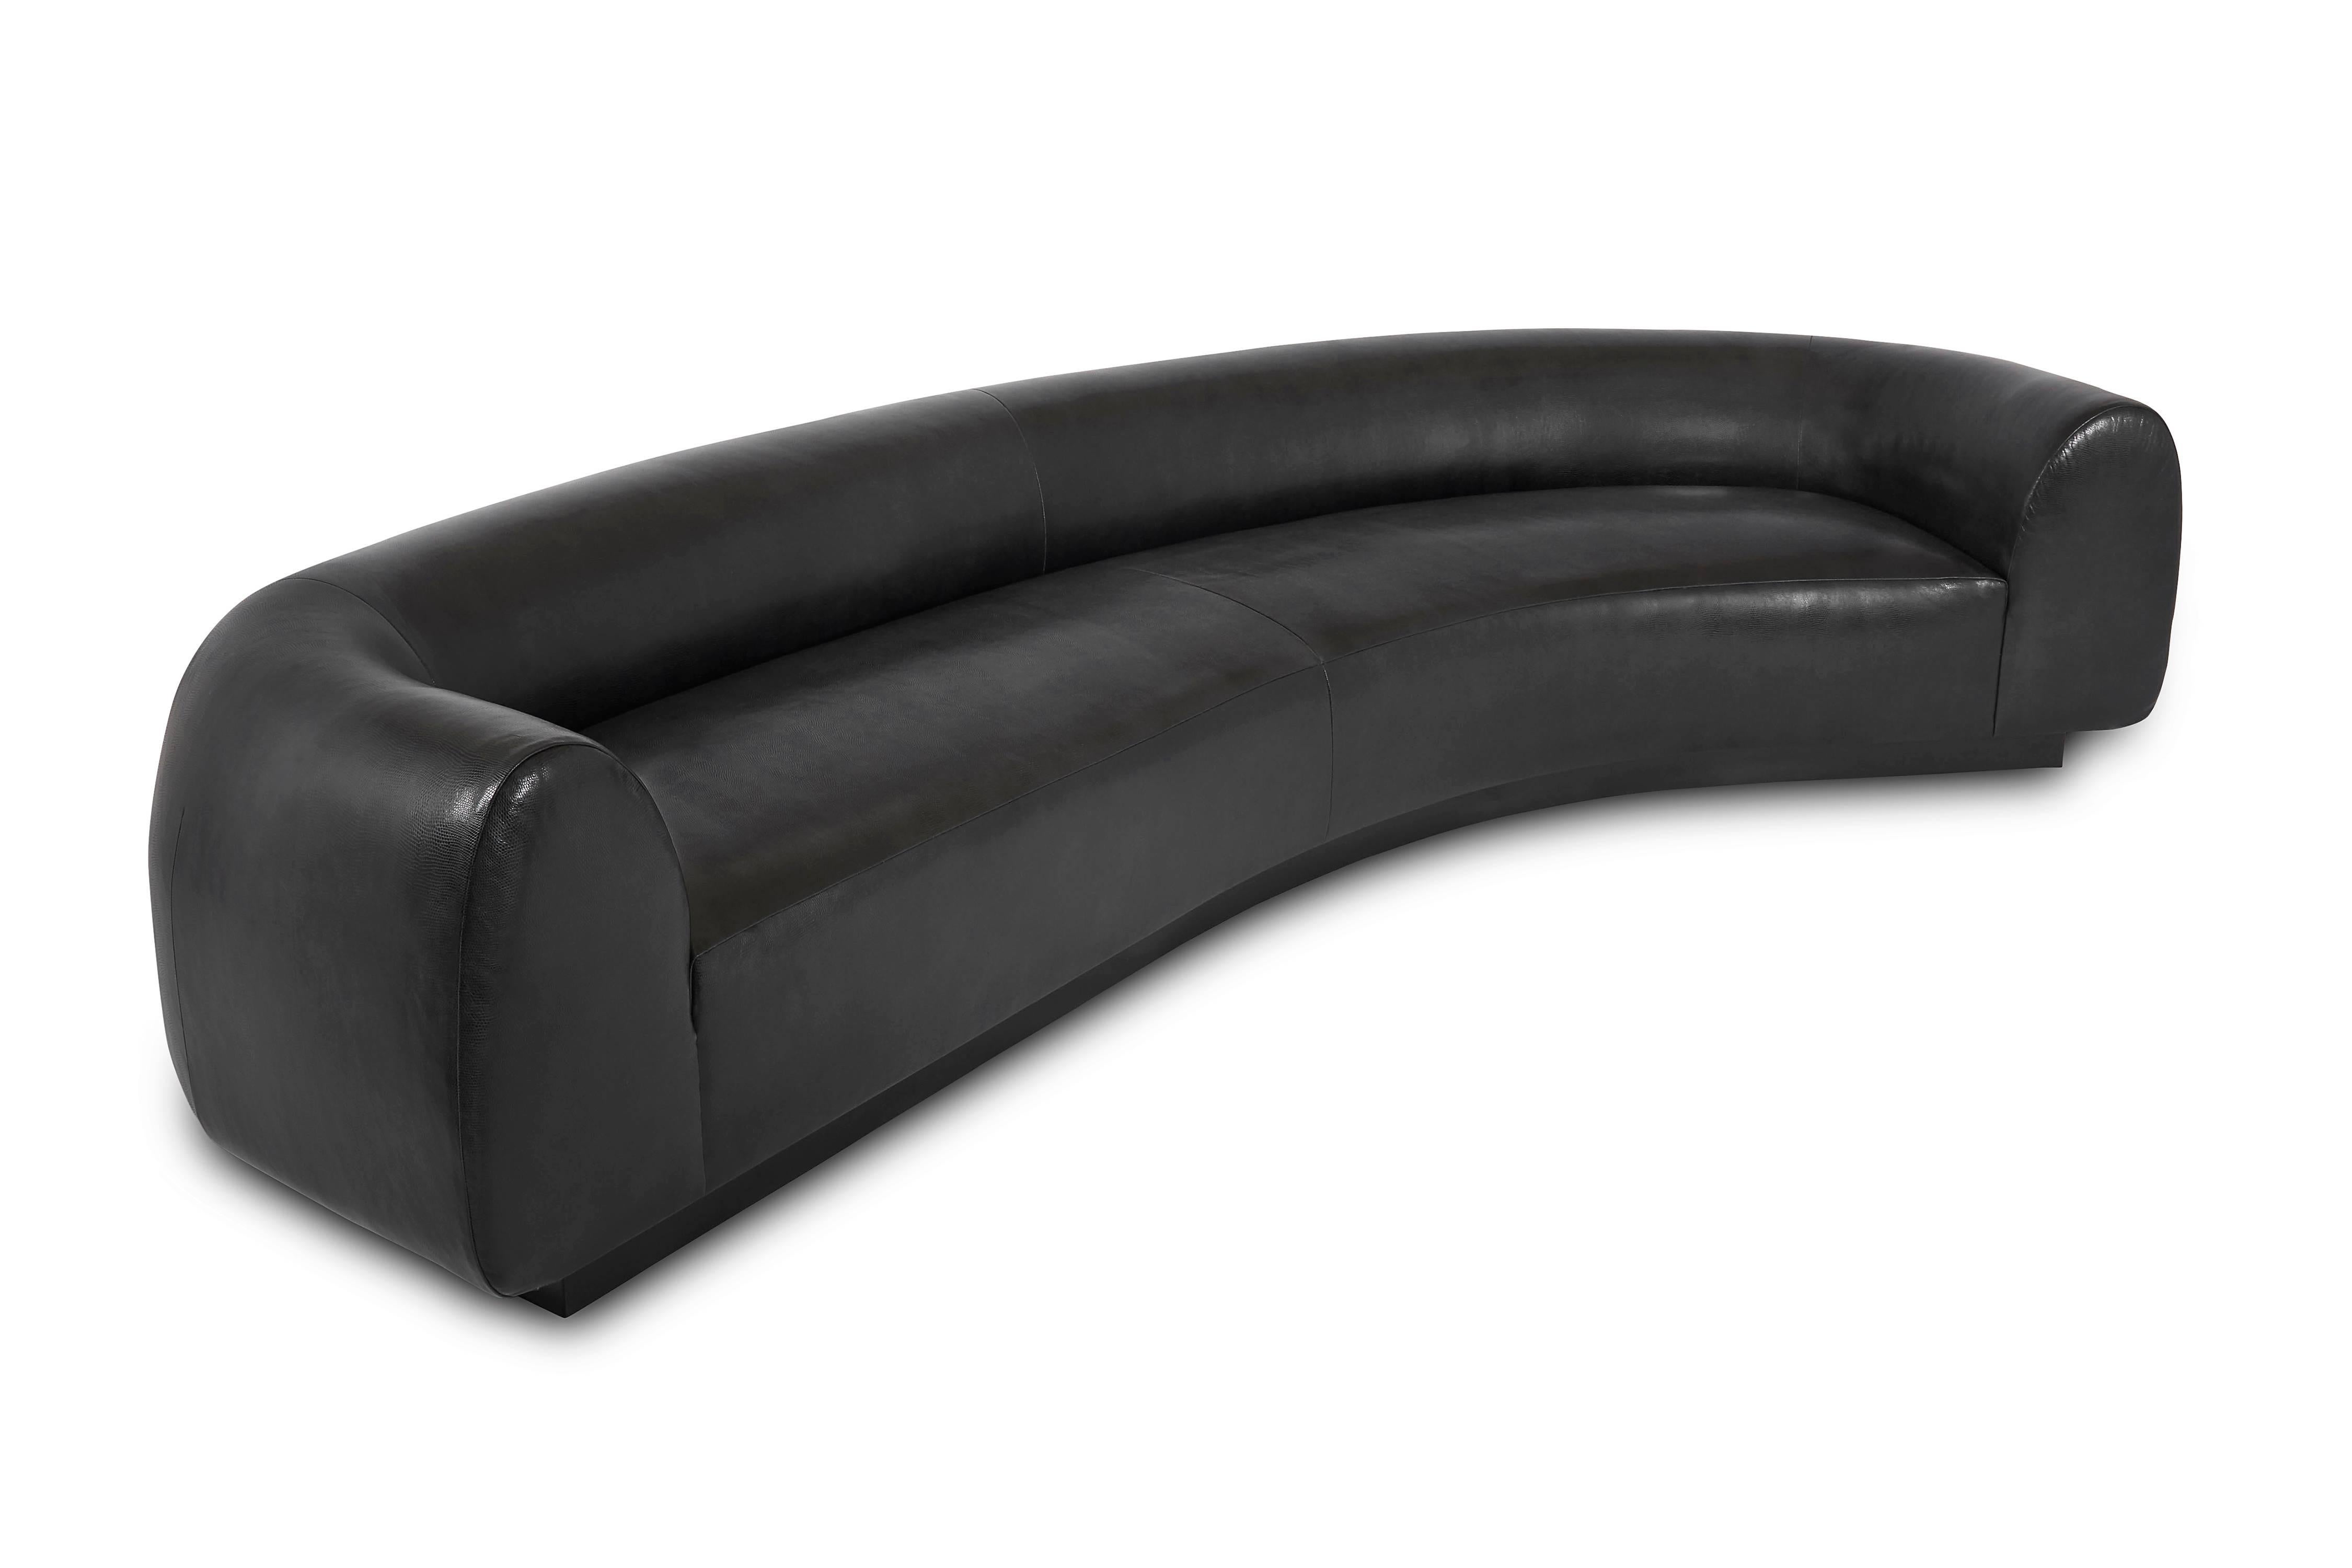 Dieses Oversize-Sofa vereint Komfort und klare, moderne Linien. Mit seinem schwarz lackierten Gestell und dem geprägten Leder ist das Sofa destino der Inbegriff von luxuriösem Komfort.